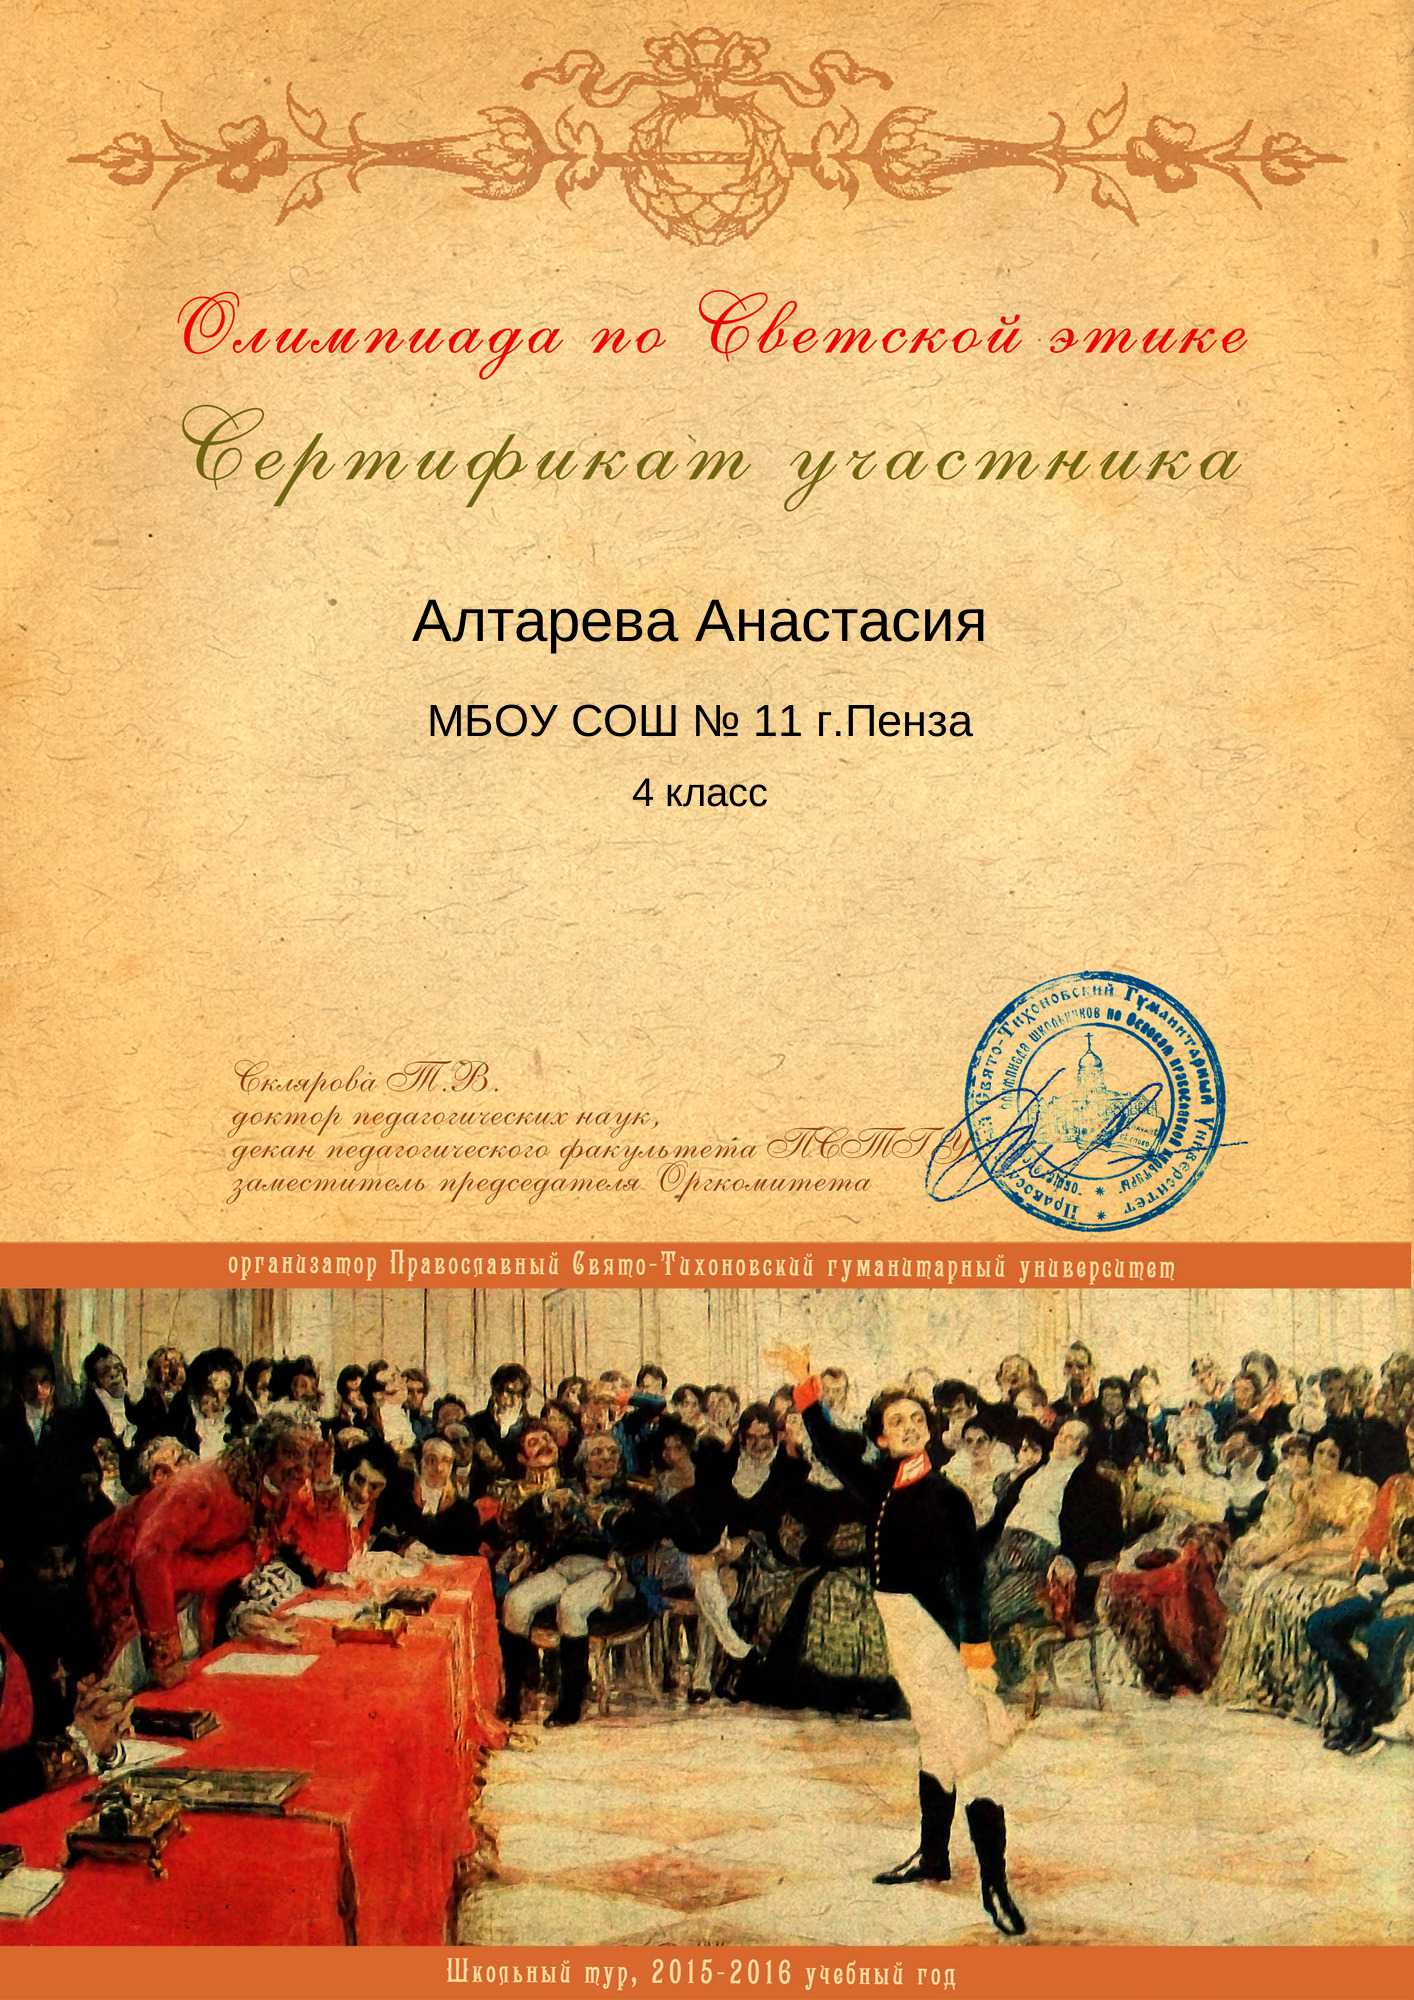 Алтарева Анастасия_сертификат участника_